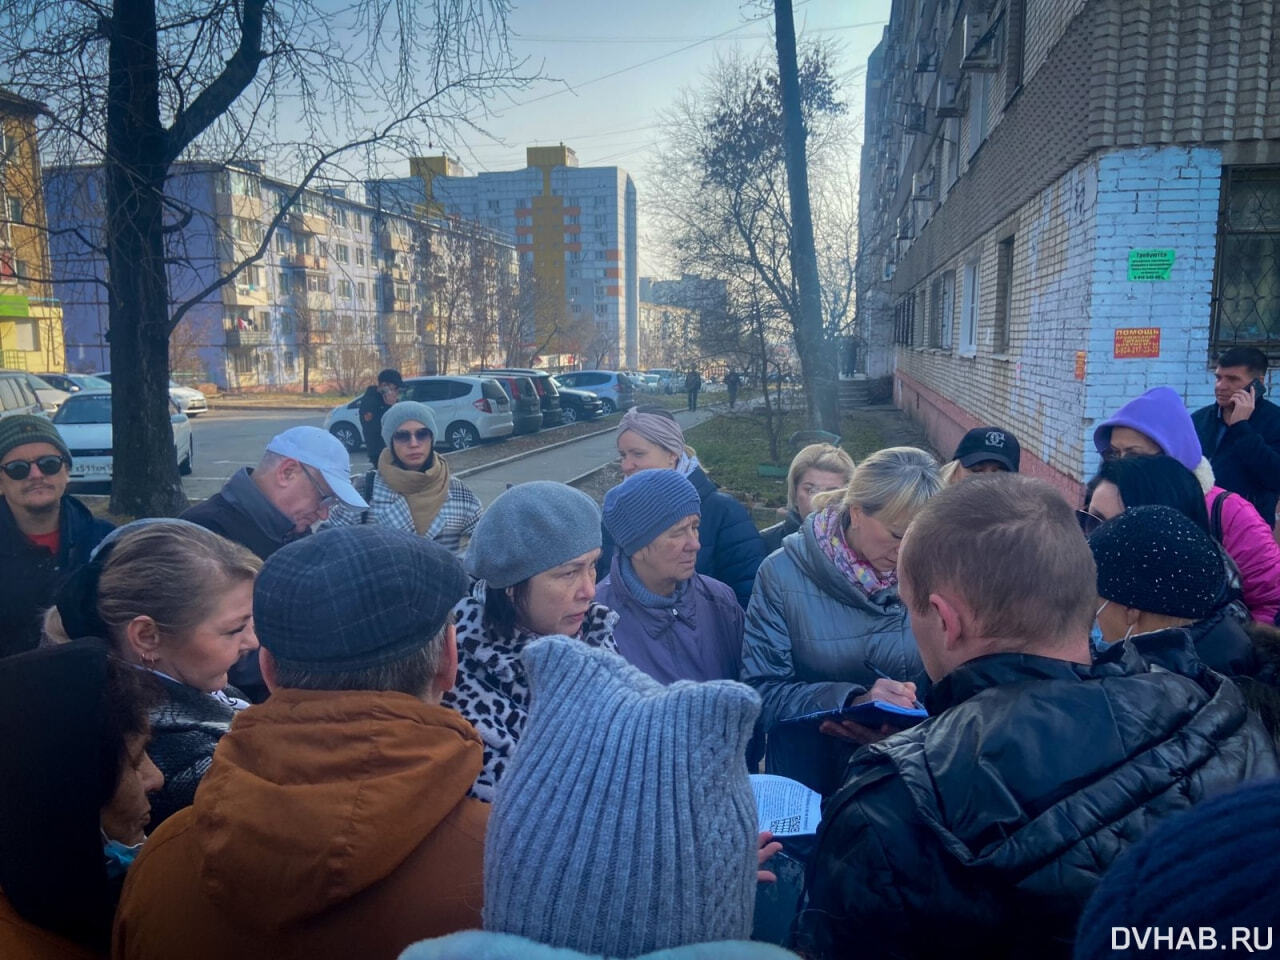 Конституция и свобода: в Хабаровске собирают подписи против QR-кодов